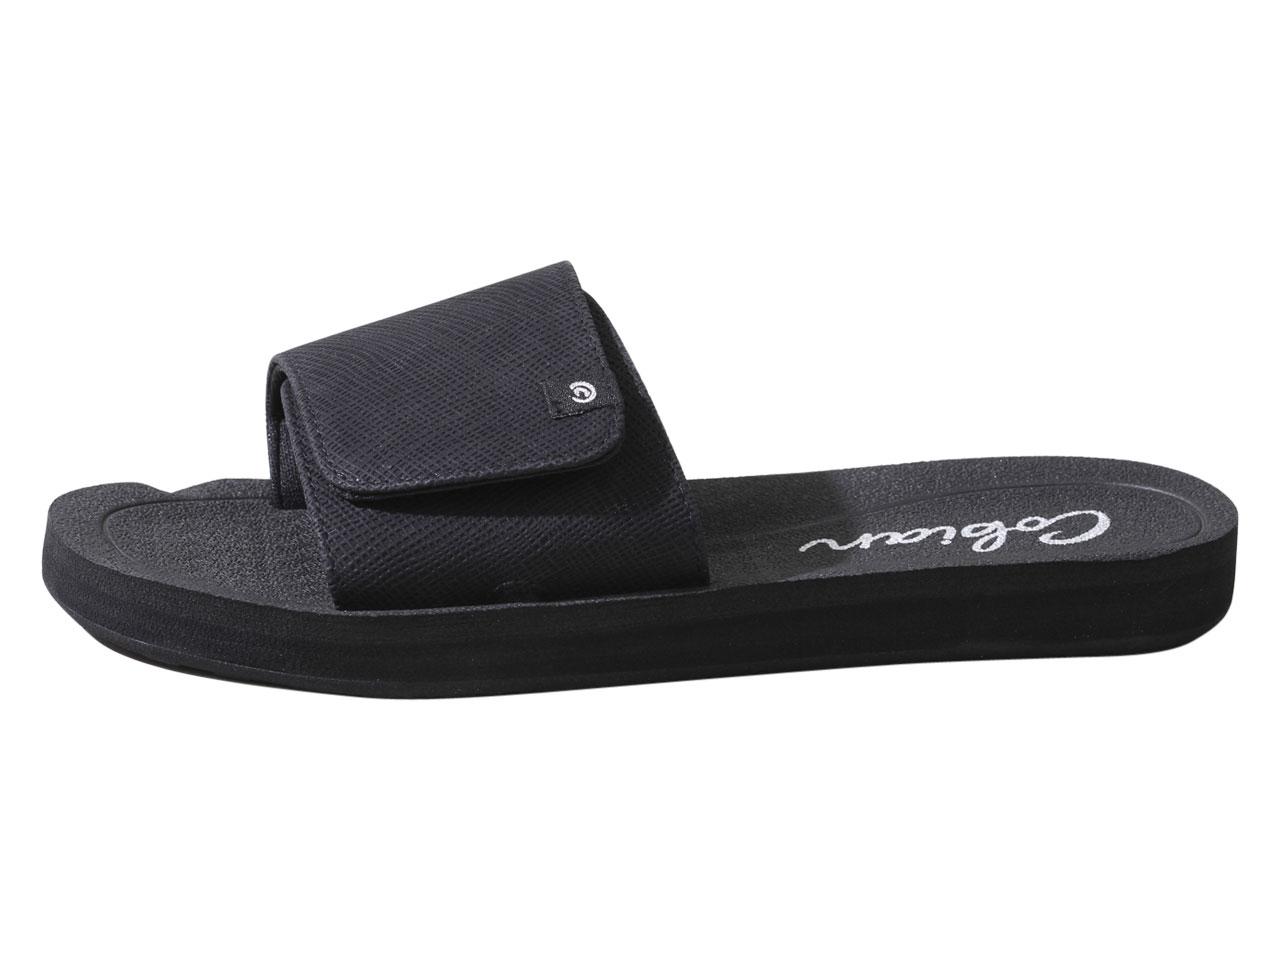 Cobian Women's Soho Slides Sandals Shoes | JoyLot.com